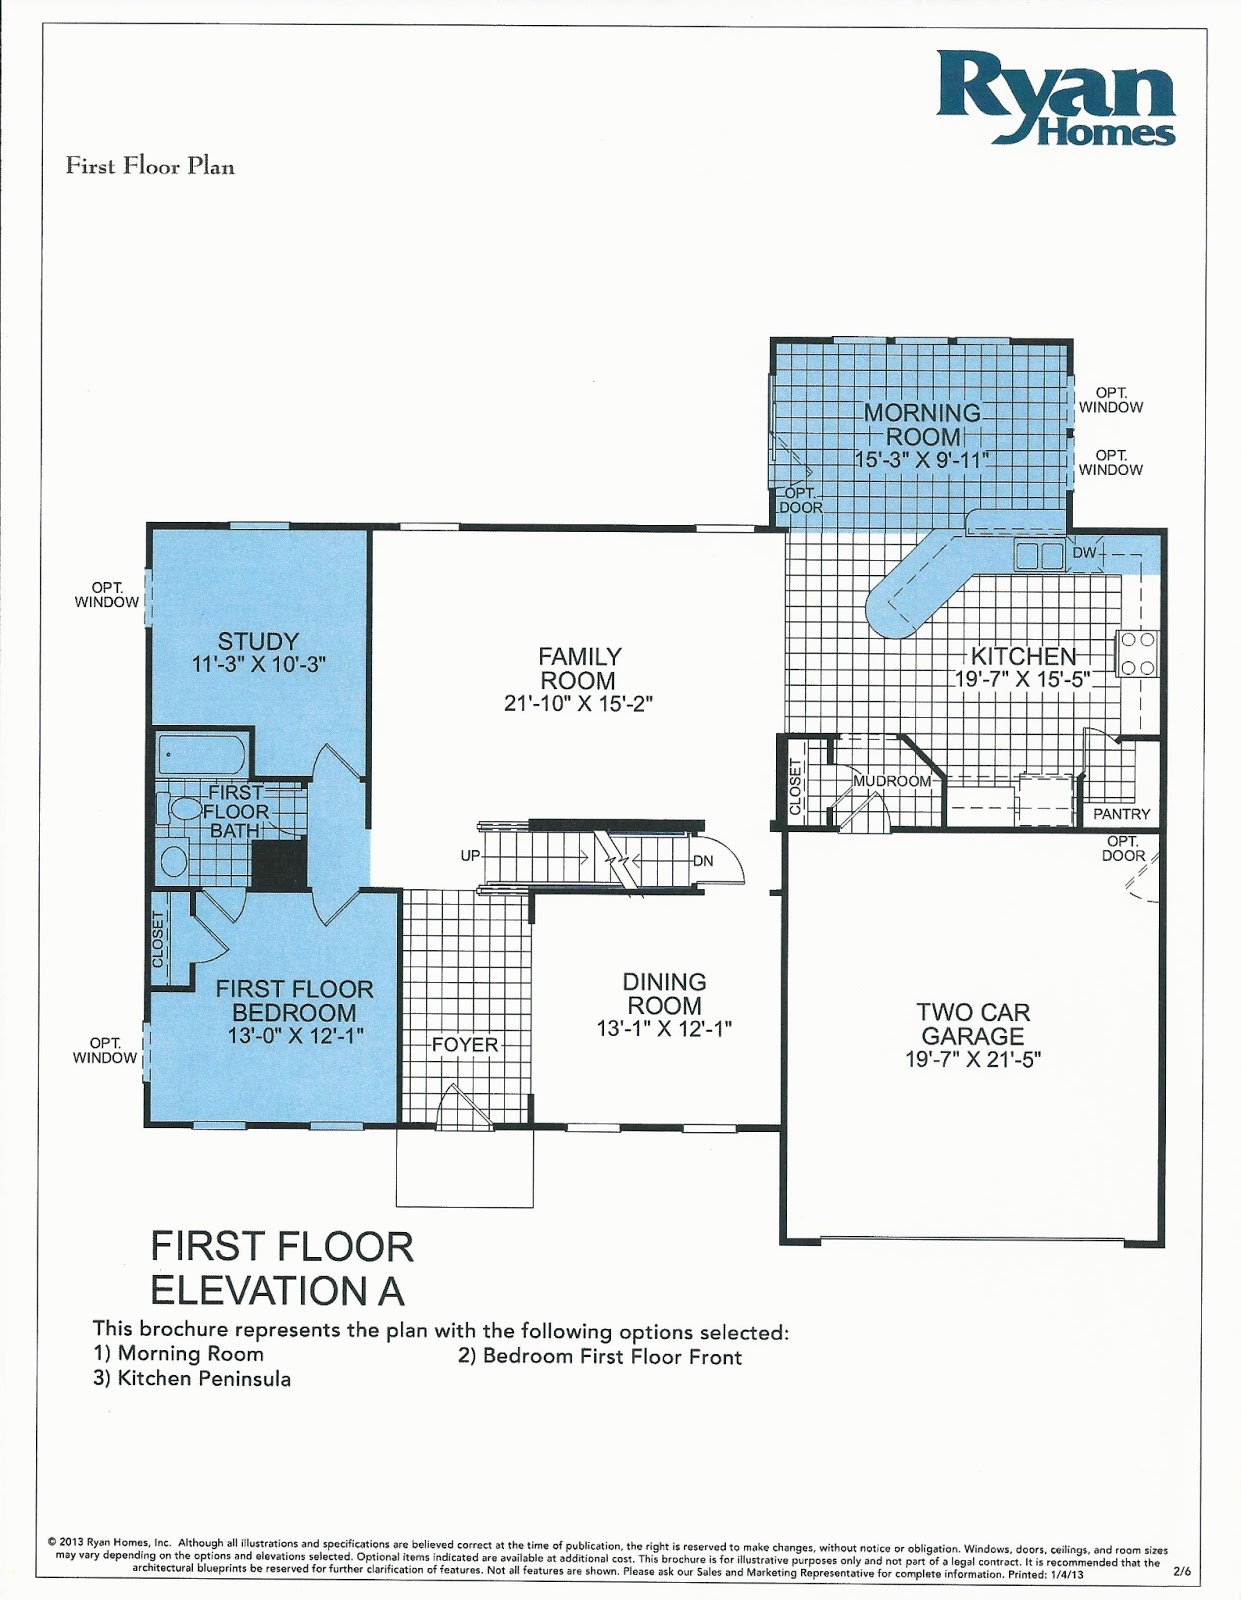 Building a Verona with Ryan Homes Verona Floor Plan